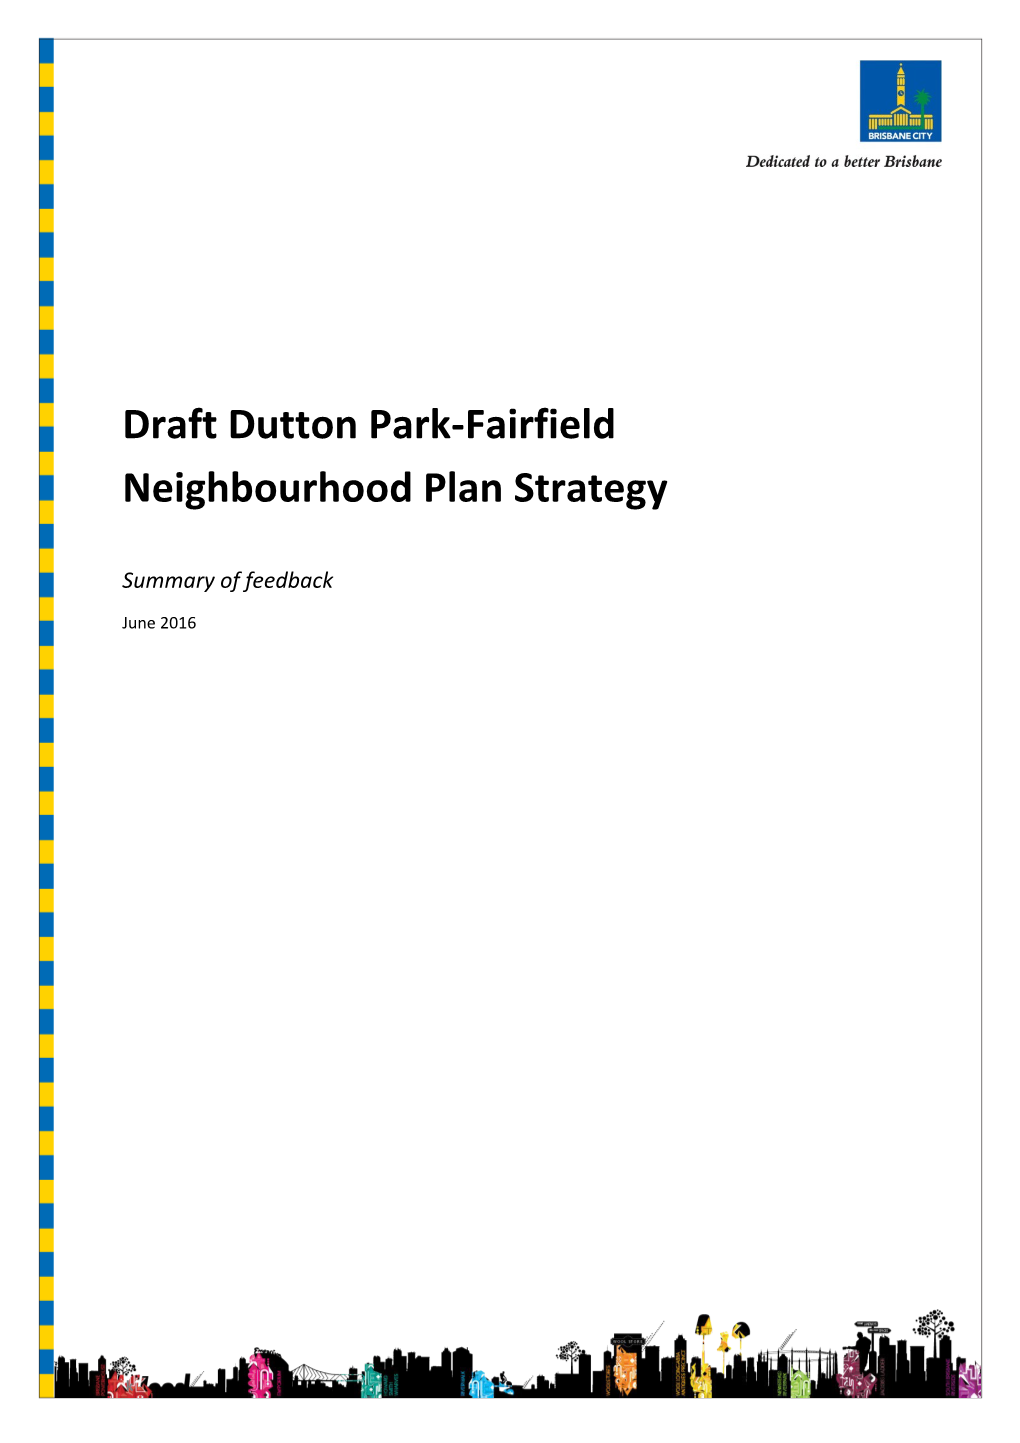 Draft Dutton Park-Fairfield Neighbourhood Plan Strategy